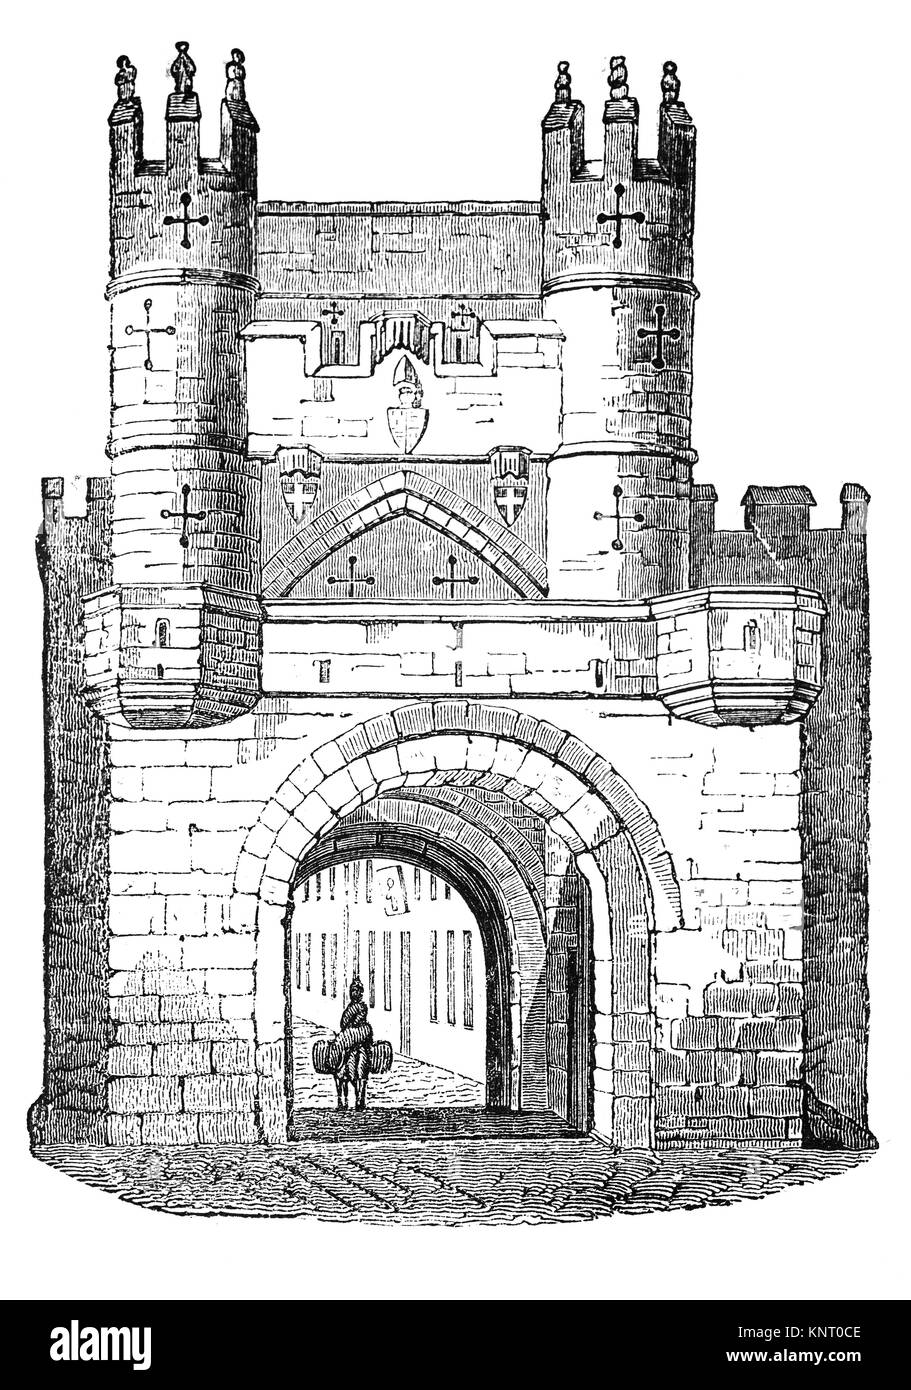 Monk Bar est la plus grande et plus décorés des bars de ville de New York, il date du début du 14ème siècle. C'était une forteresse, avec chaque étage capable d'être défendus. Sur l'avant de la barre est un arc soutenant une galerie, y compris "meurtre-trous par lesquels des missiles et l'ébullition de l'eau peut être déversée sur les attaquants. Le Barbican à l'avant a été démoli en 1825. Yorkshire, Angleterre Banque D'Images